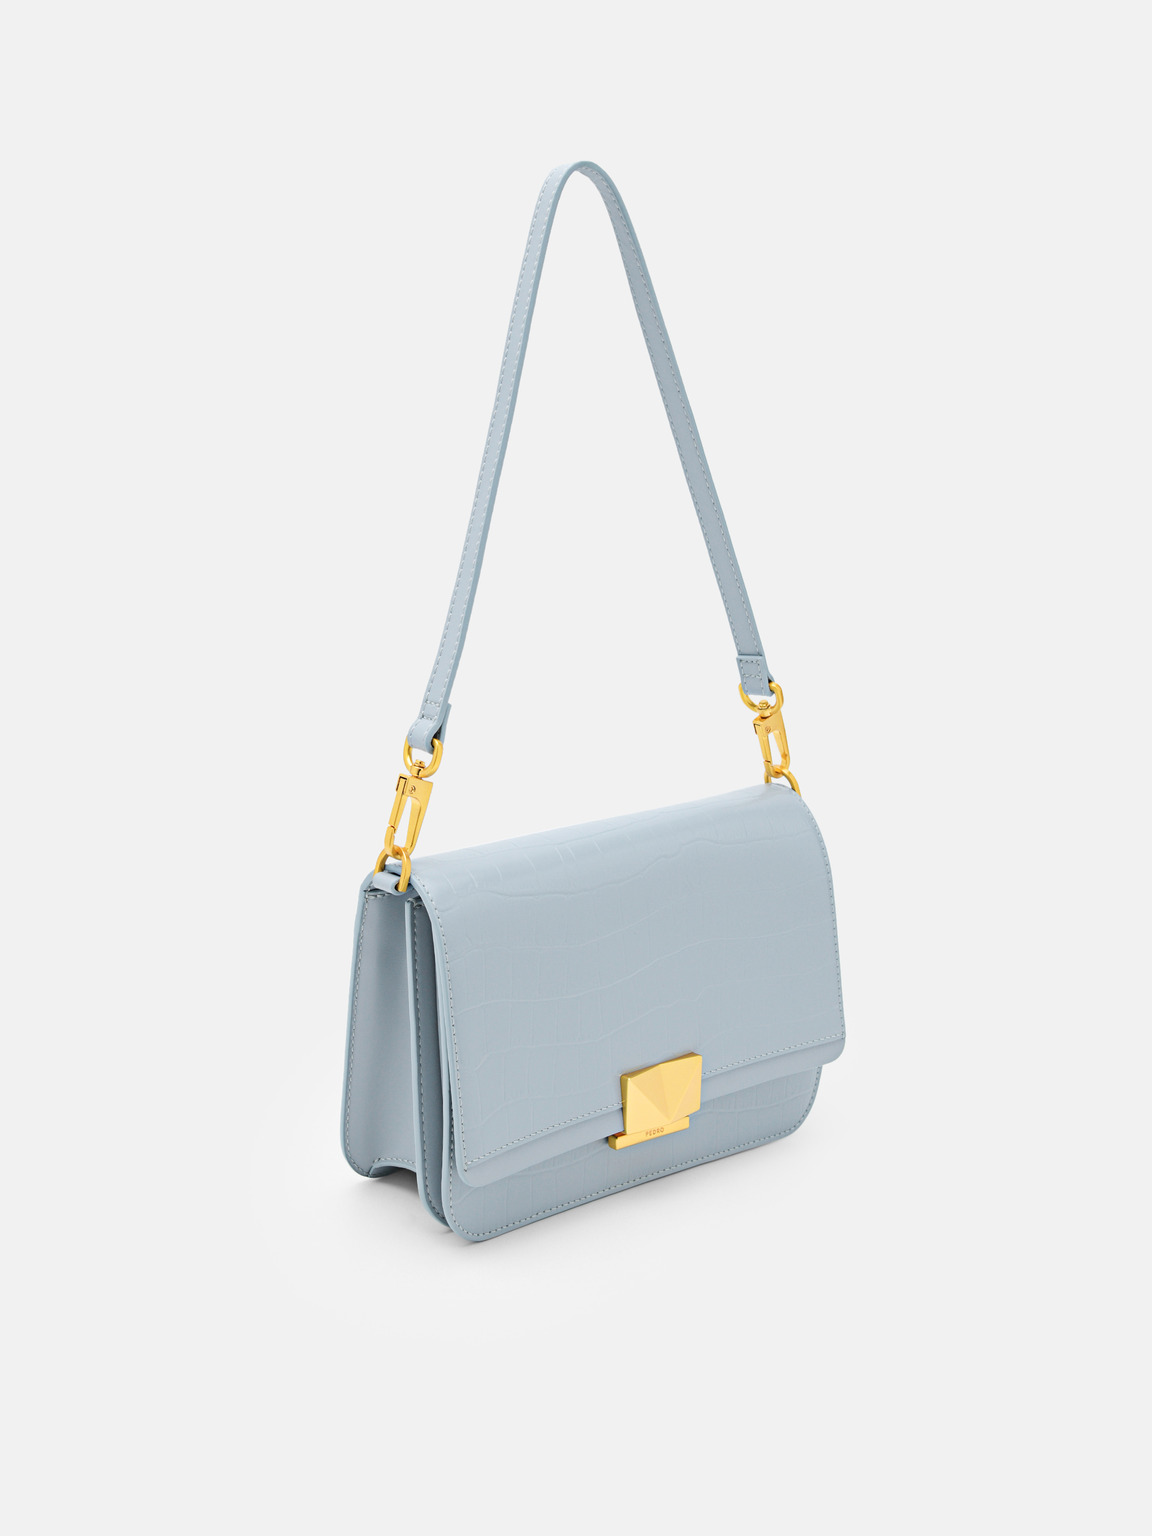 PEDRO Studio Pixel Leather Shoulder Bag, Slate Blue